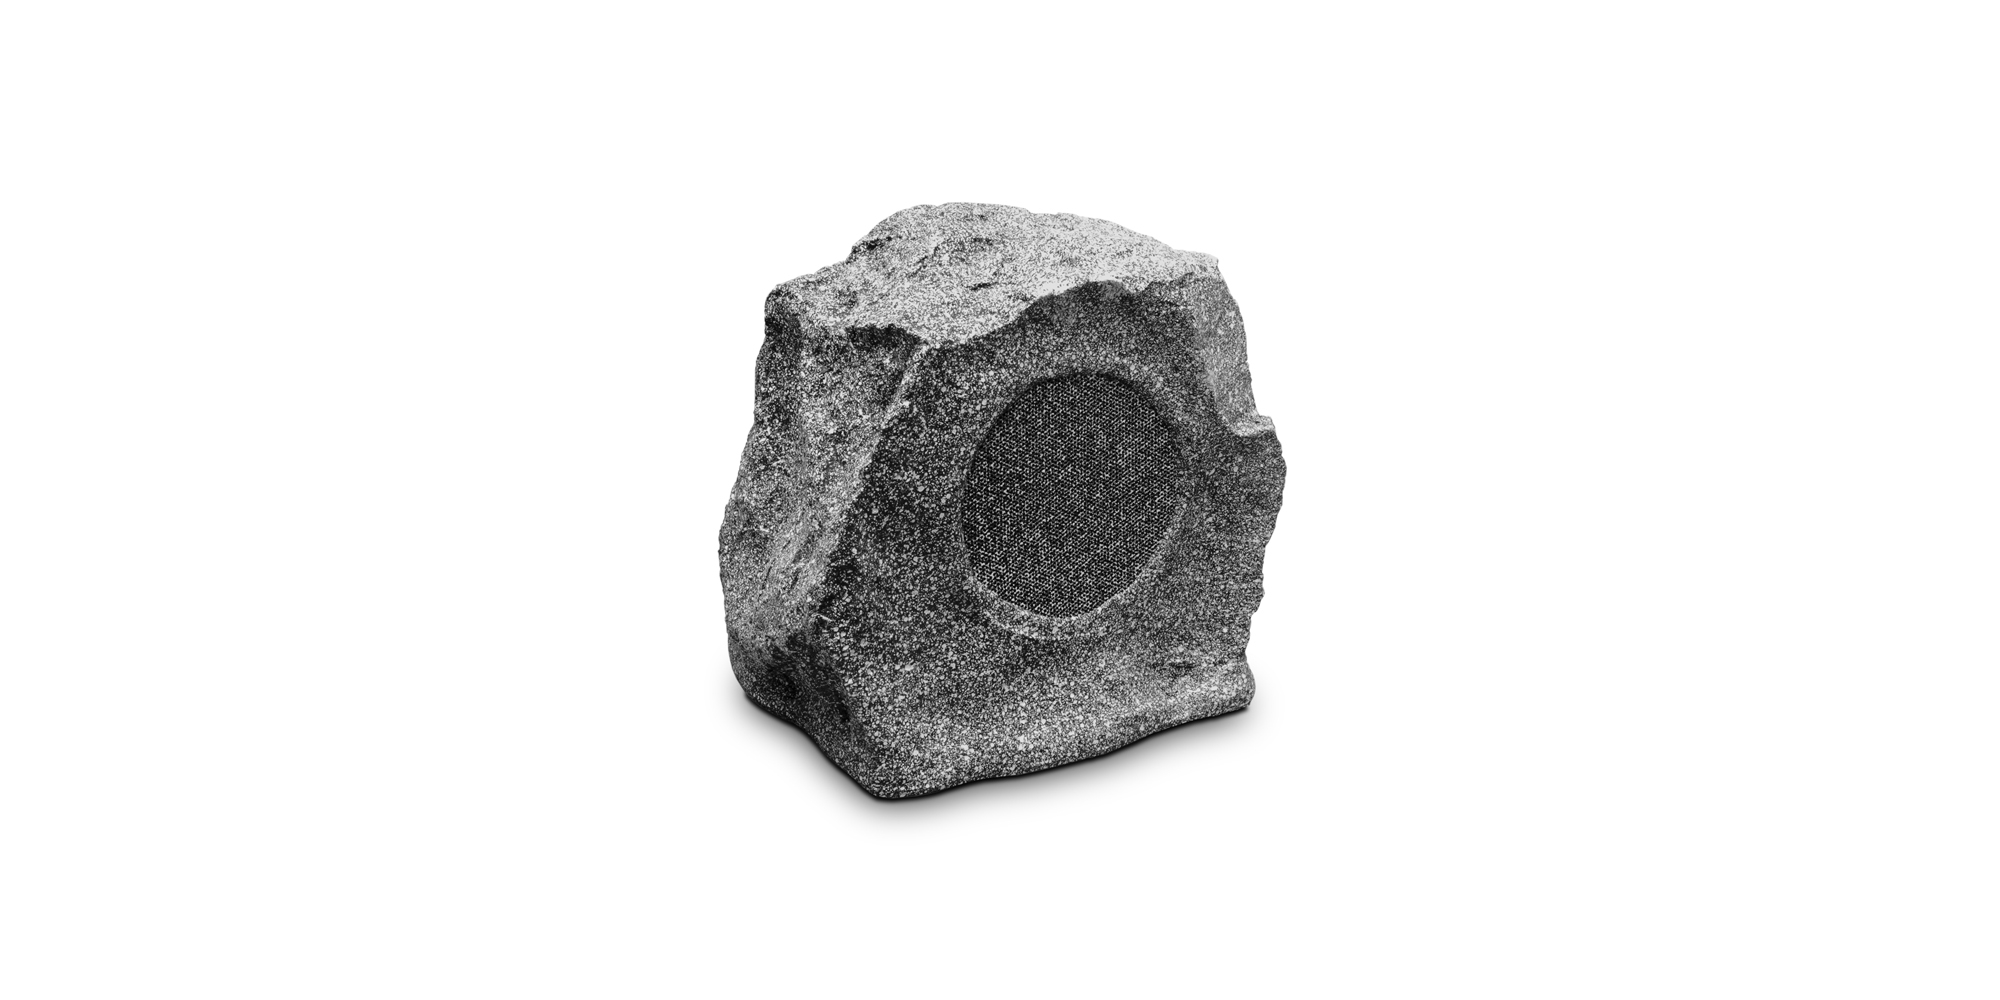 BIAMP ROCK20 Altavoz de exterior tipo roca 5.25".Línea de 70V 10W, 5W, 2.5W/ 100V 20W, 10W, 5W/ 8Ω 60W IP64. Color gris.1 Pieza